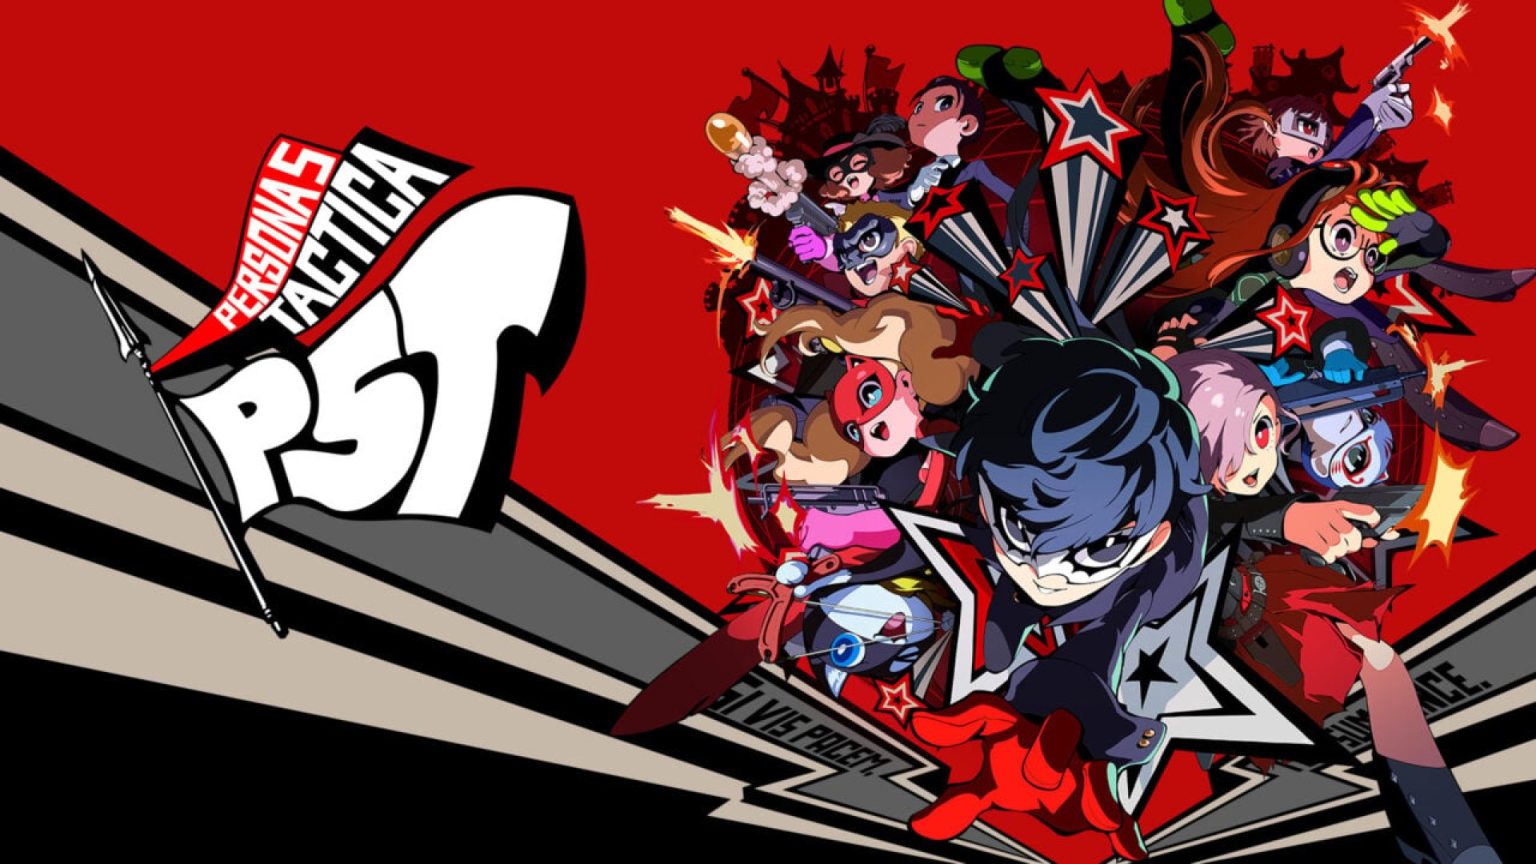 Les développeurs de Persona 5 Tactica ont publié une nouvelle bande-annonce montrant trois personnages : Joker, Morgana et Erin.